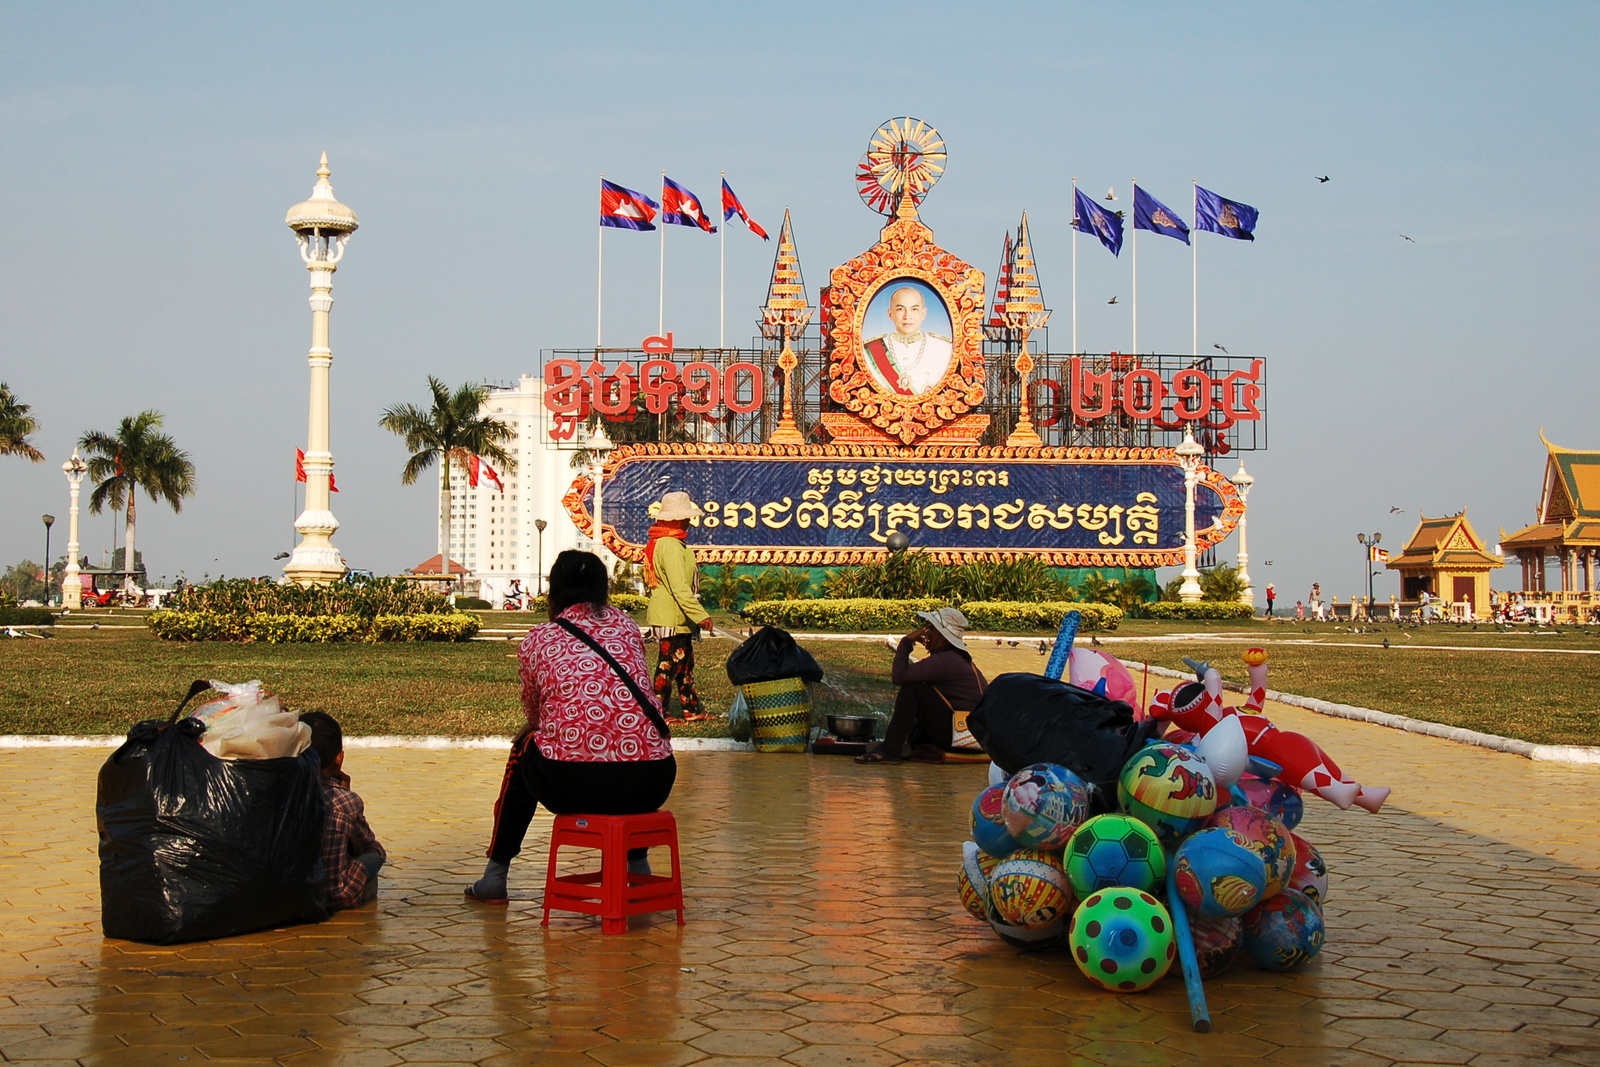 Phnom Phem